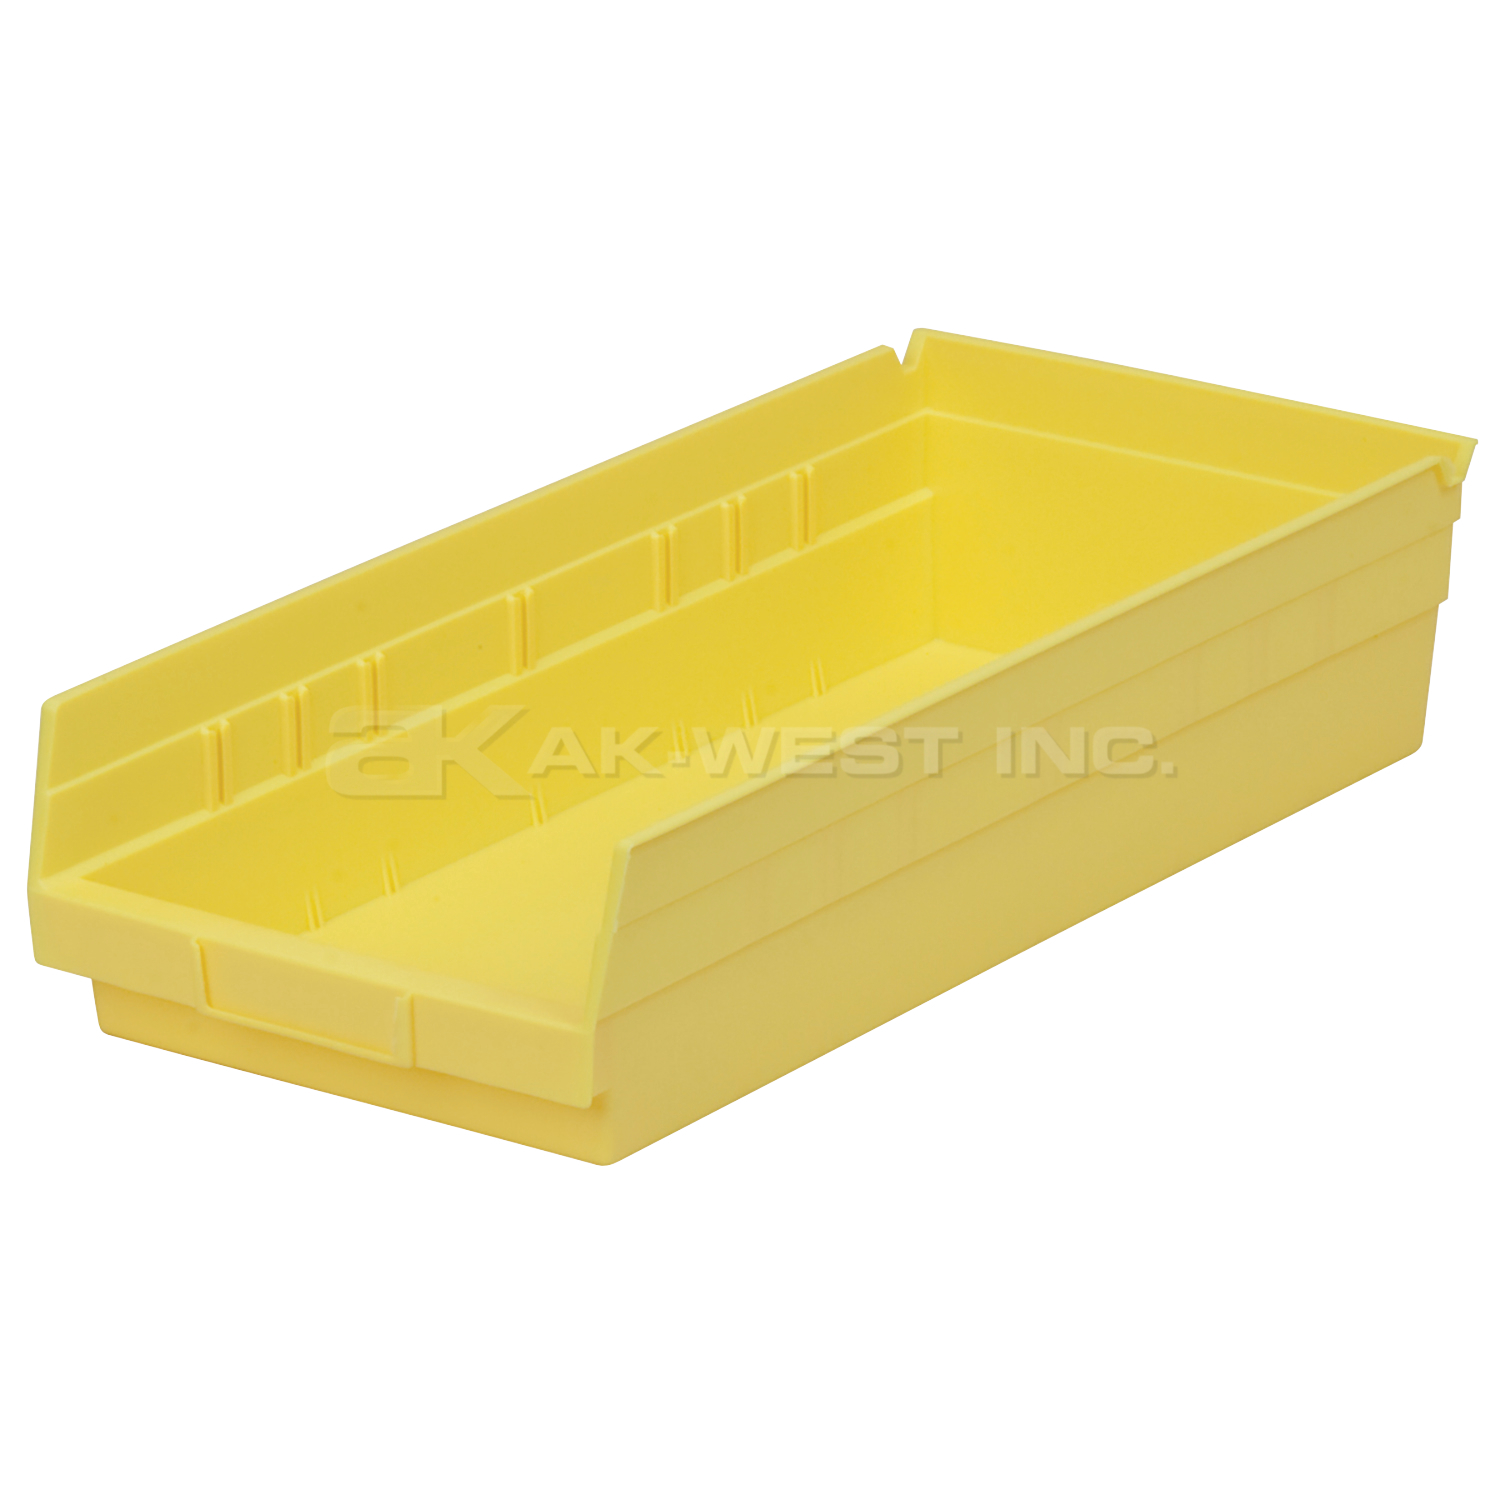 Yellow, 17-7/8" x 8-3/8" x 4" Shelf Bin (12 Per Carton)